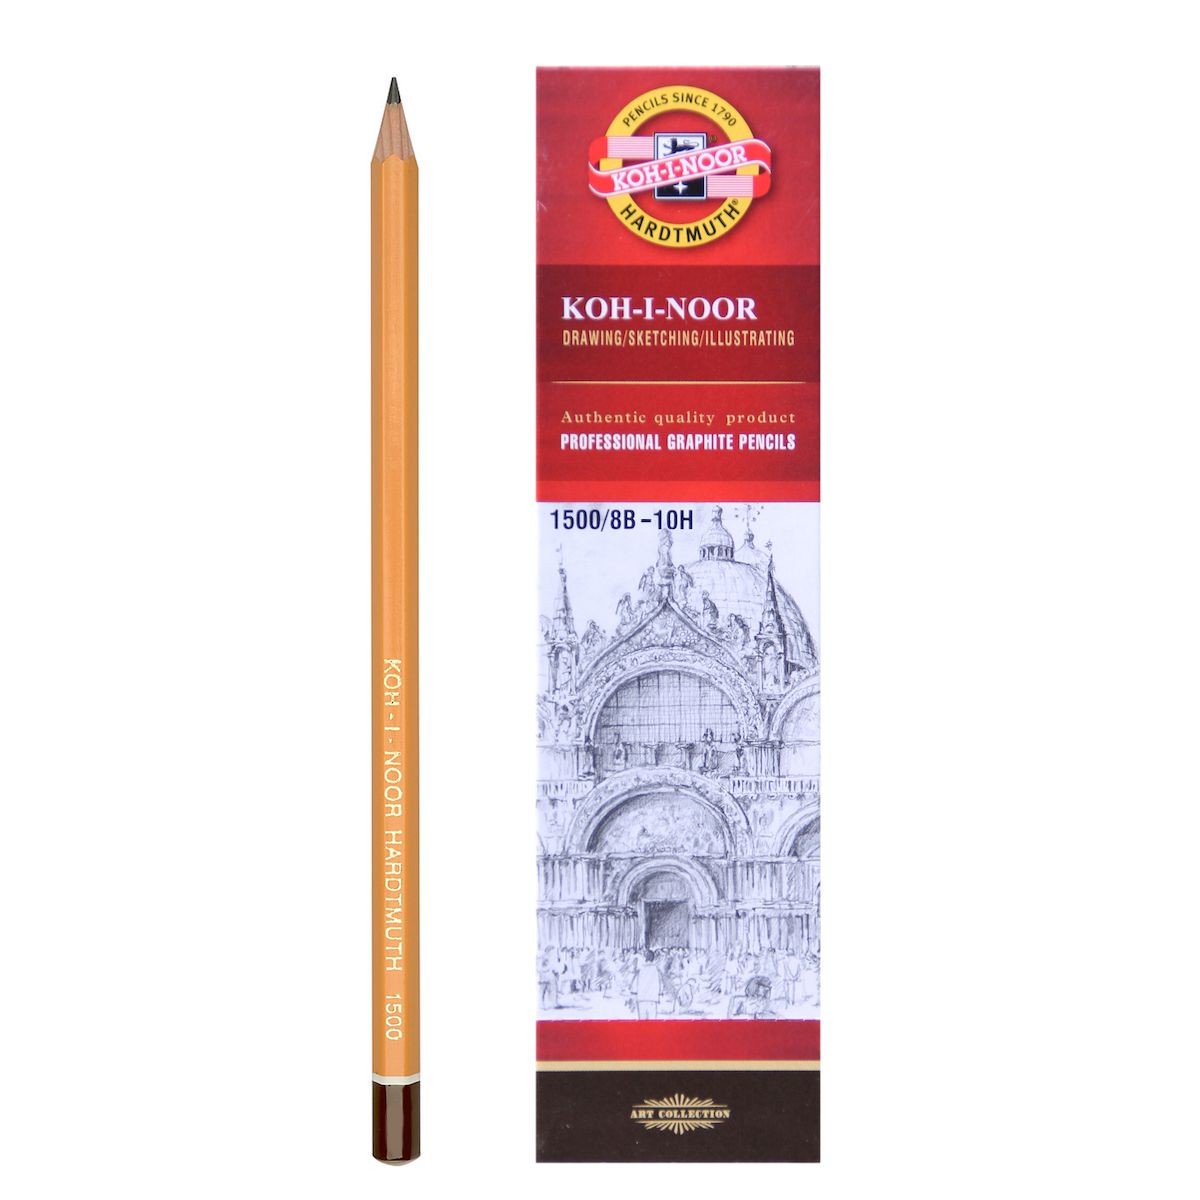 Bleistifte einzeln Koh-I-Noor von 8B bis 10H